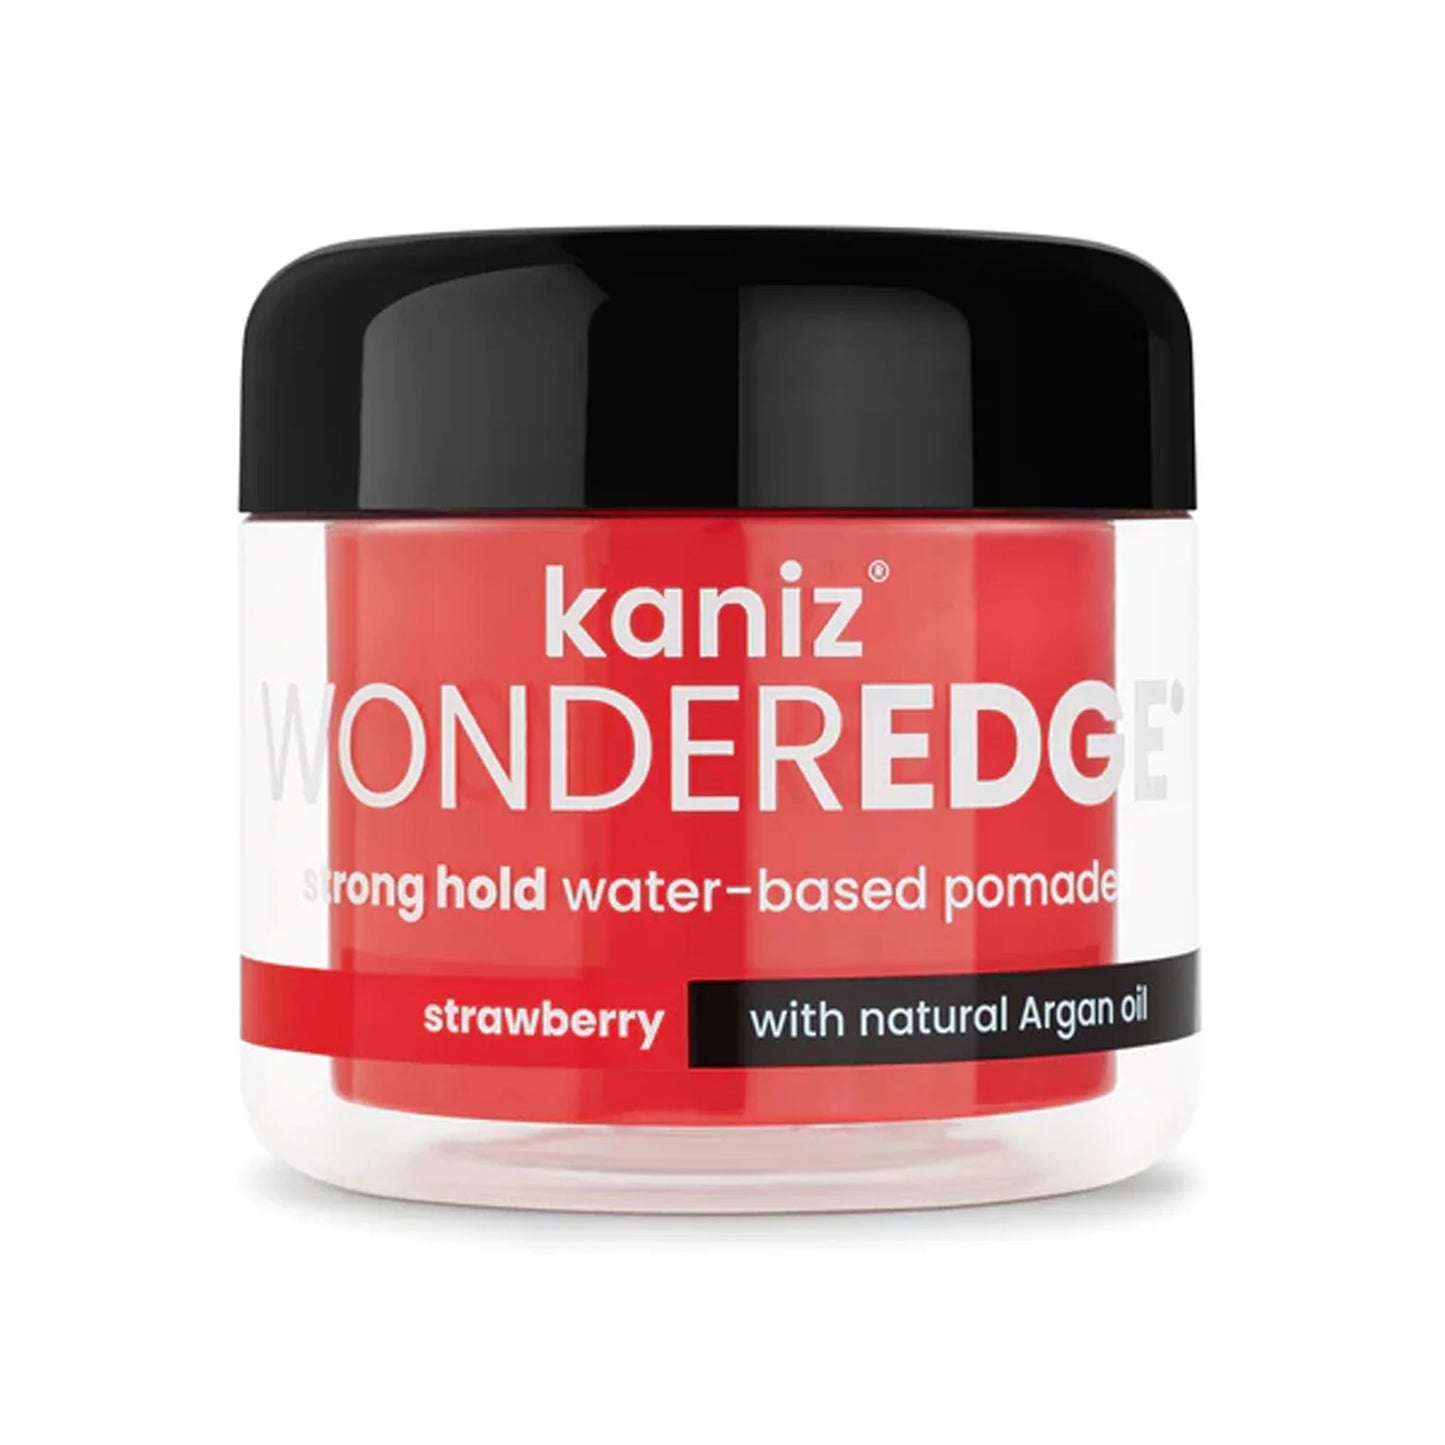 Kaniz wonderedge strong hold pomade